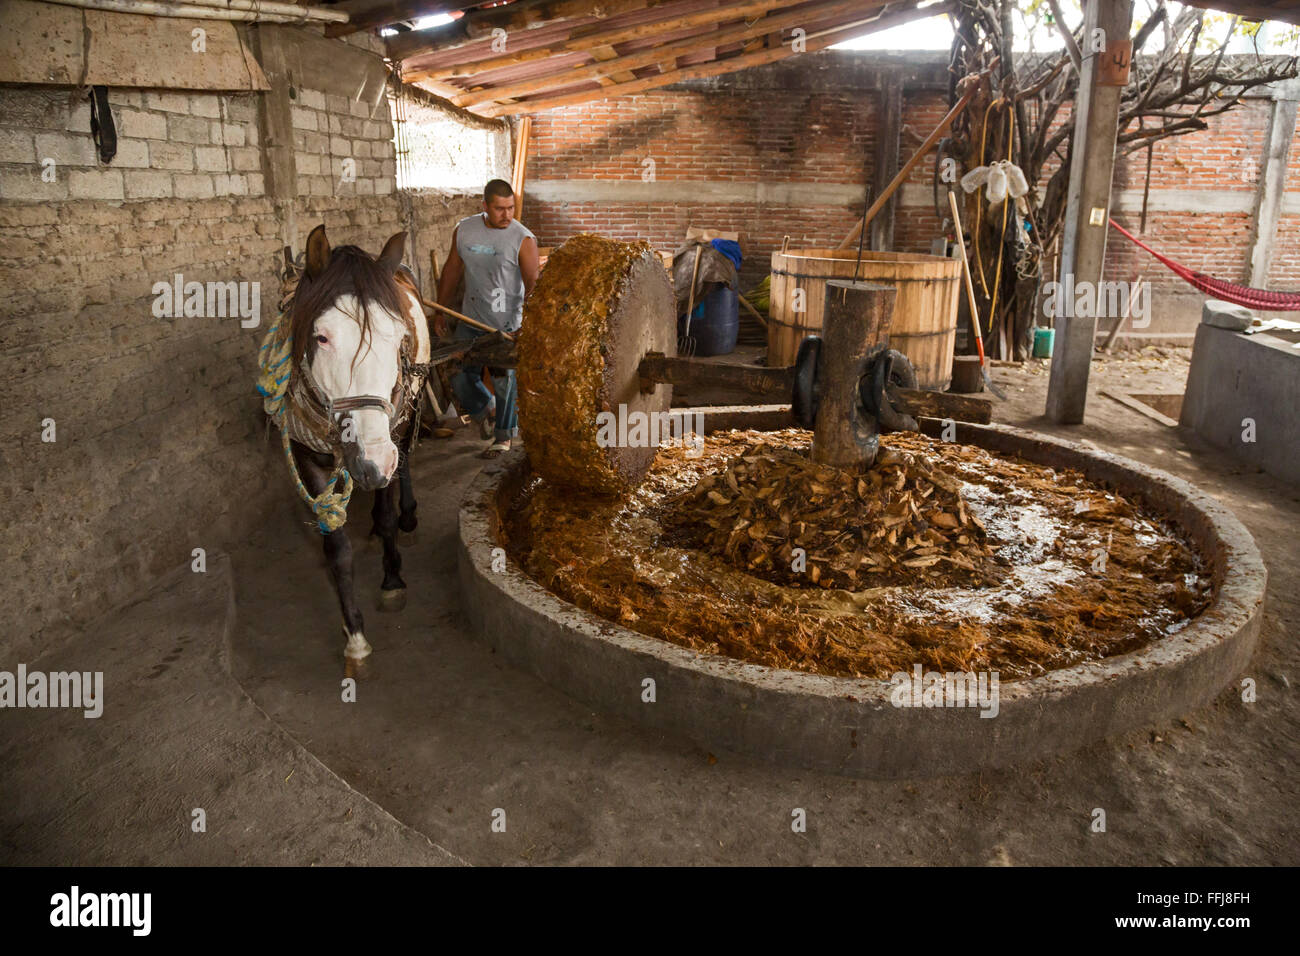 Santiago Matatlán, Oaxaca, Mexiko - zieht ein Pferd einen Stein um die Maguey-Pflanze in ein Mezcal-Destillerie zu vernichten. Stockfoto